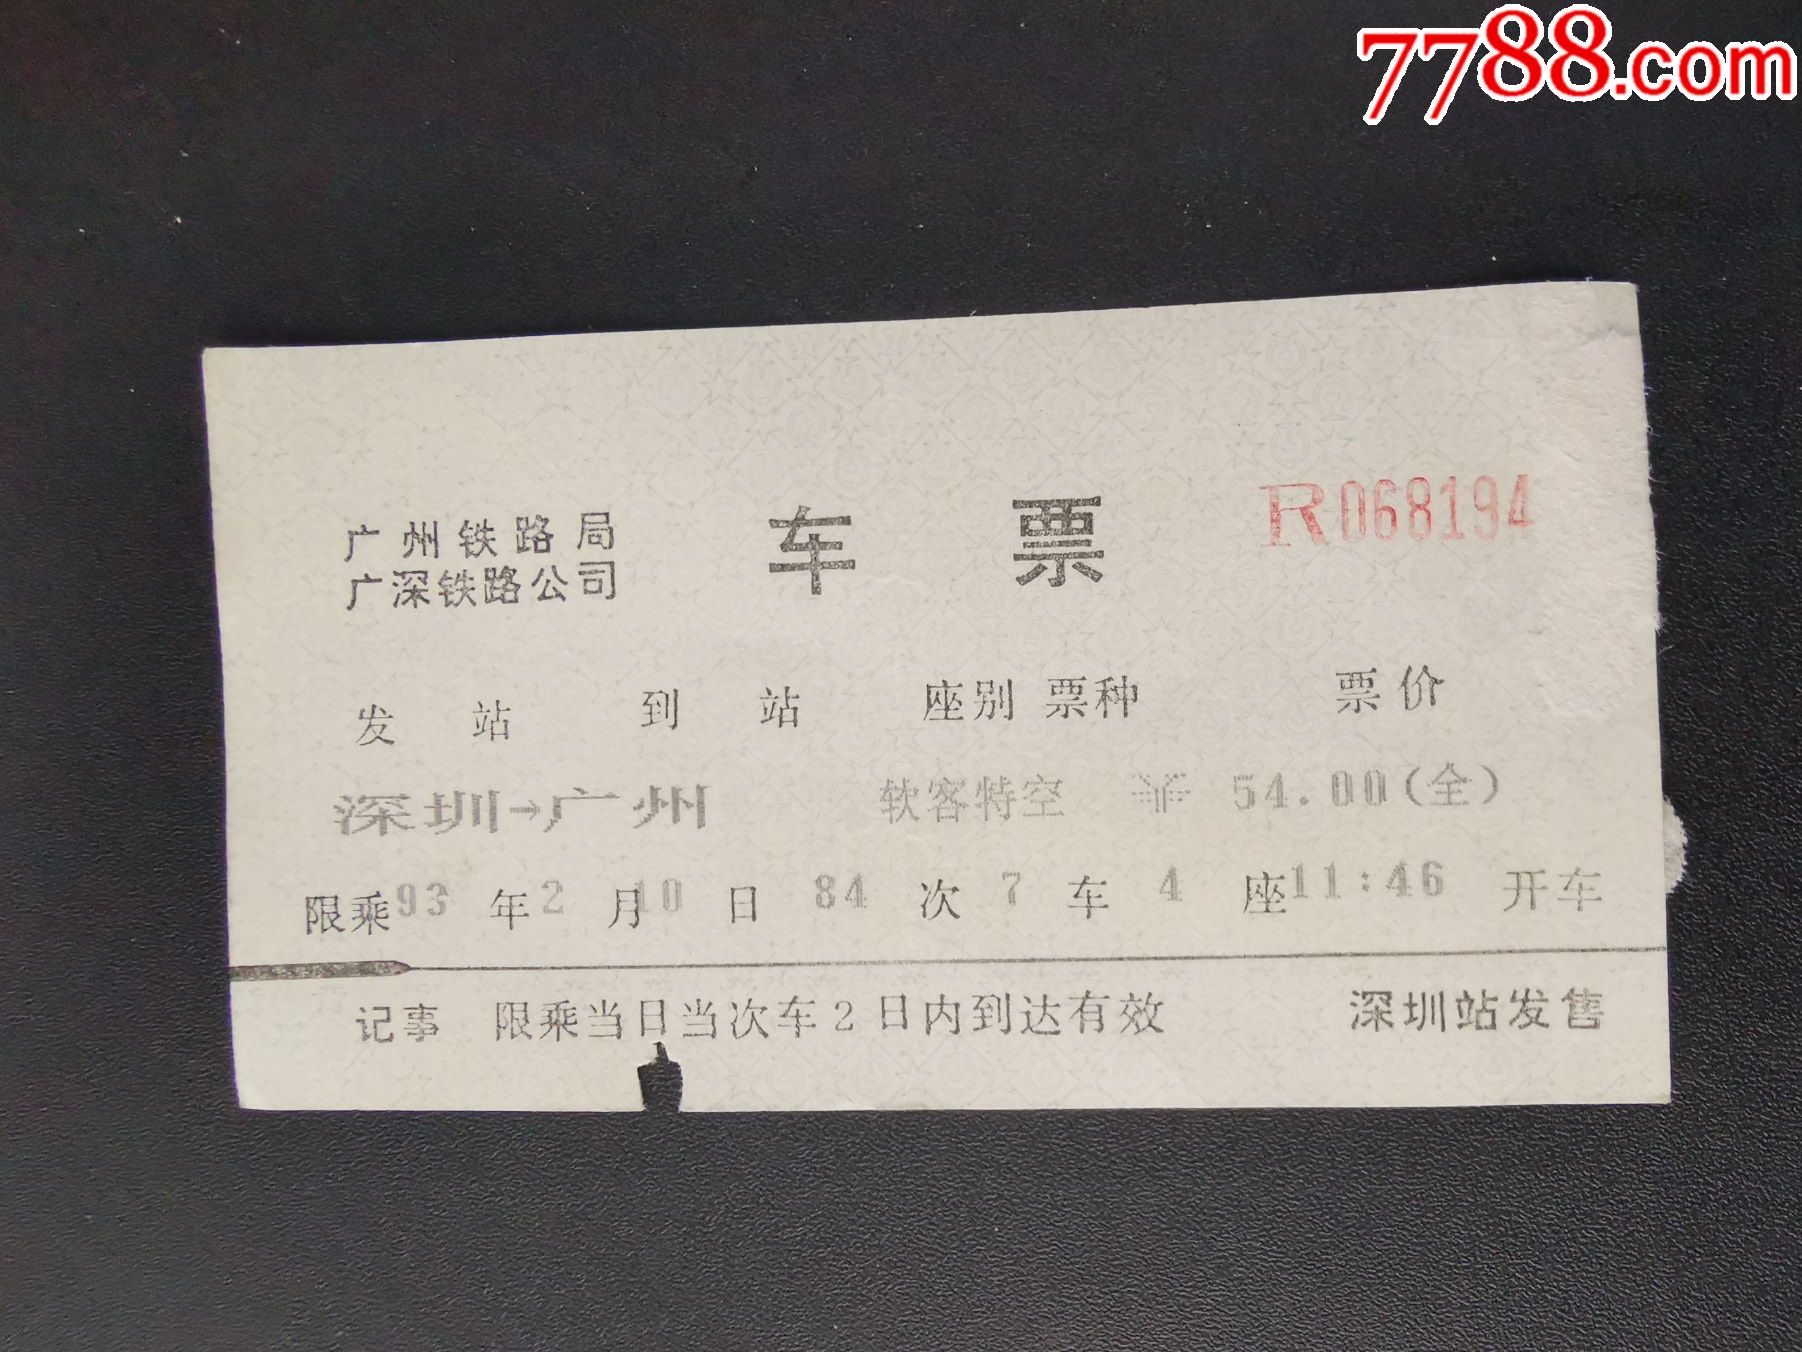 火车票(广深铁路公司-电脑车票)深圳-广州;软客特空;93年